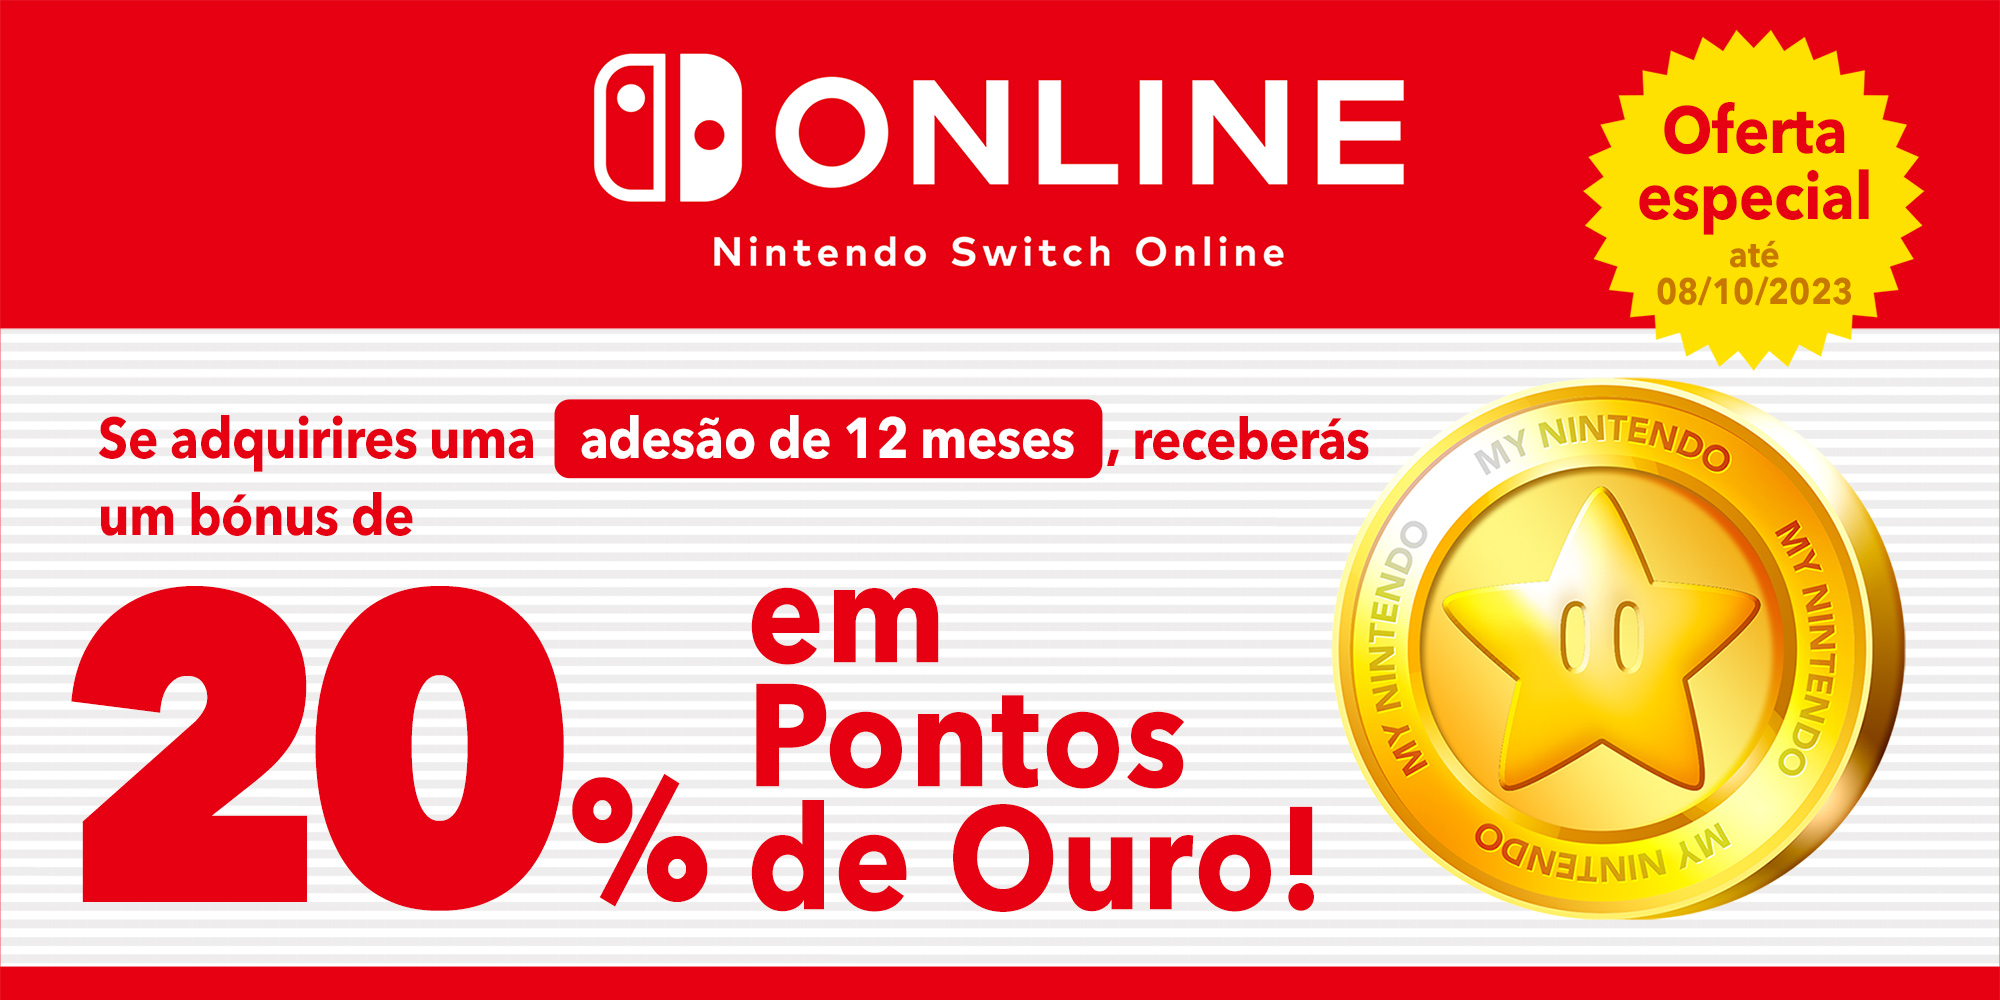 Oferta especial: Podes receber até €14,00 em Pontos de Ouro com adesões do Nintendo Switch Online de 12 meses!